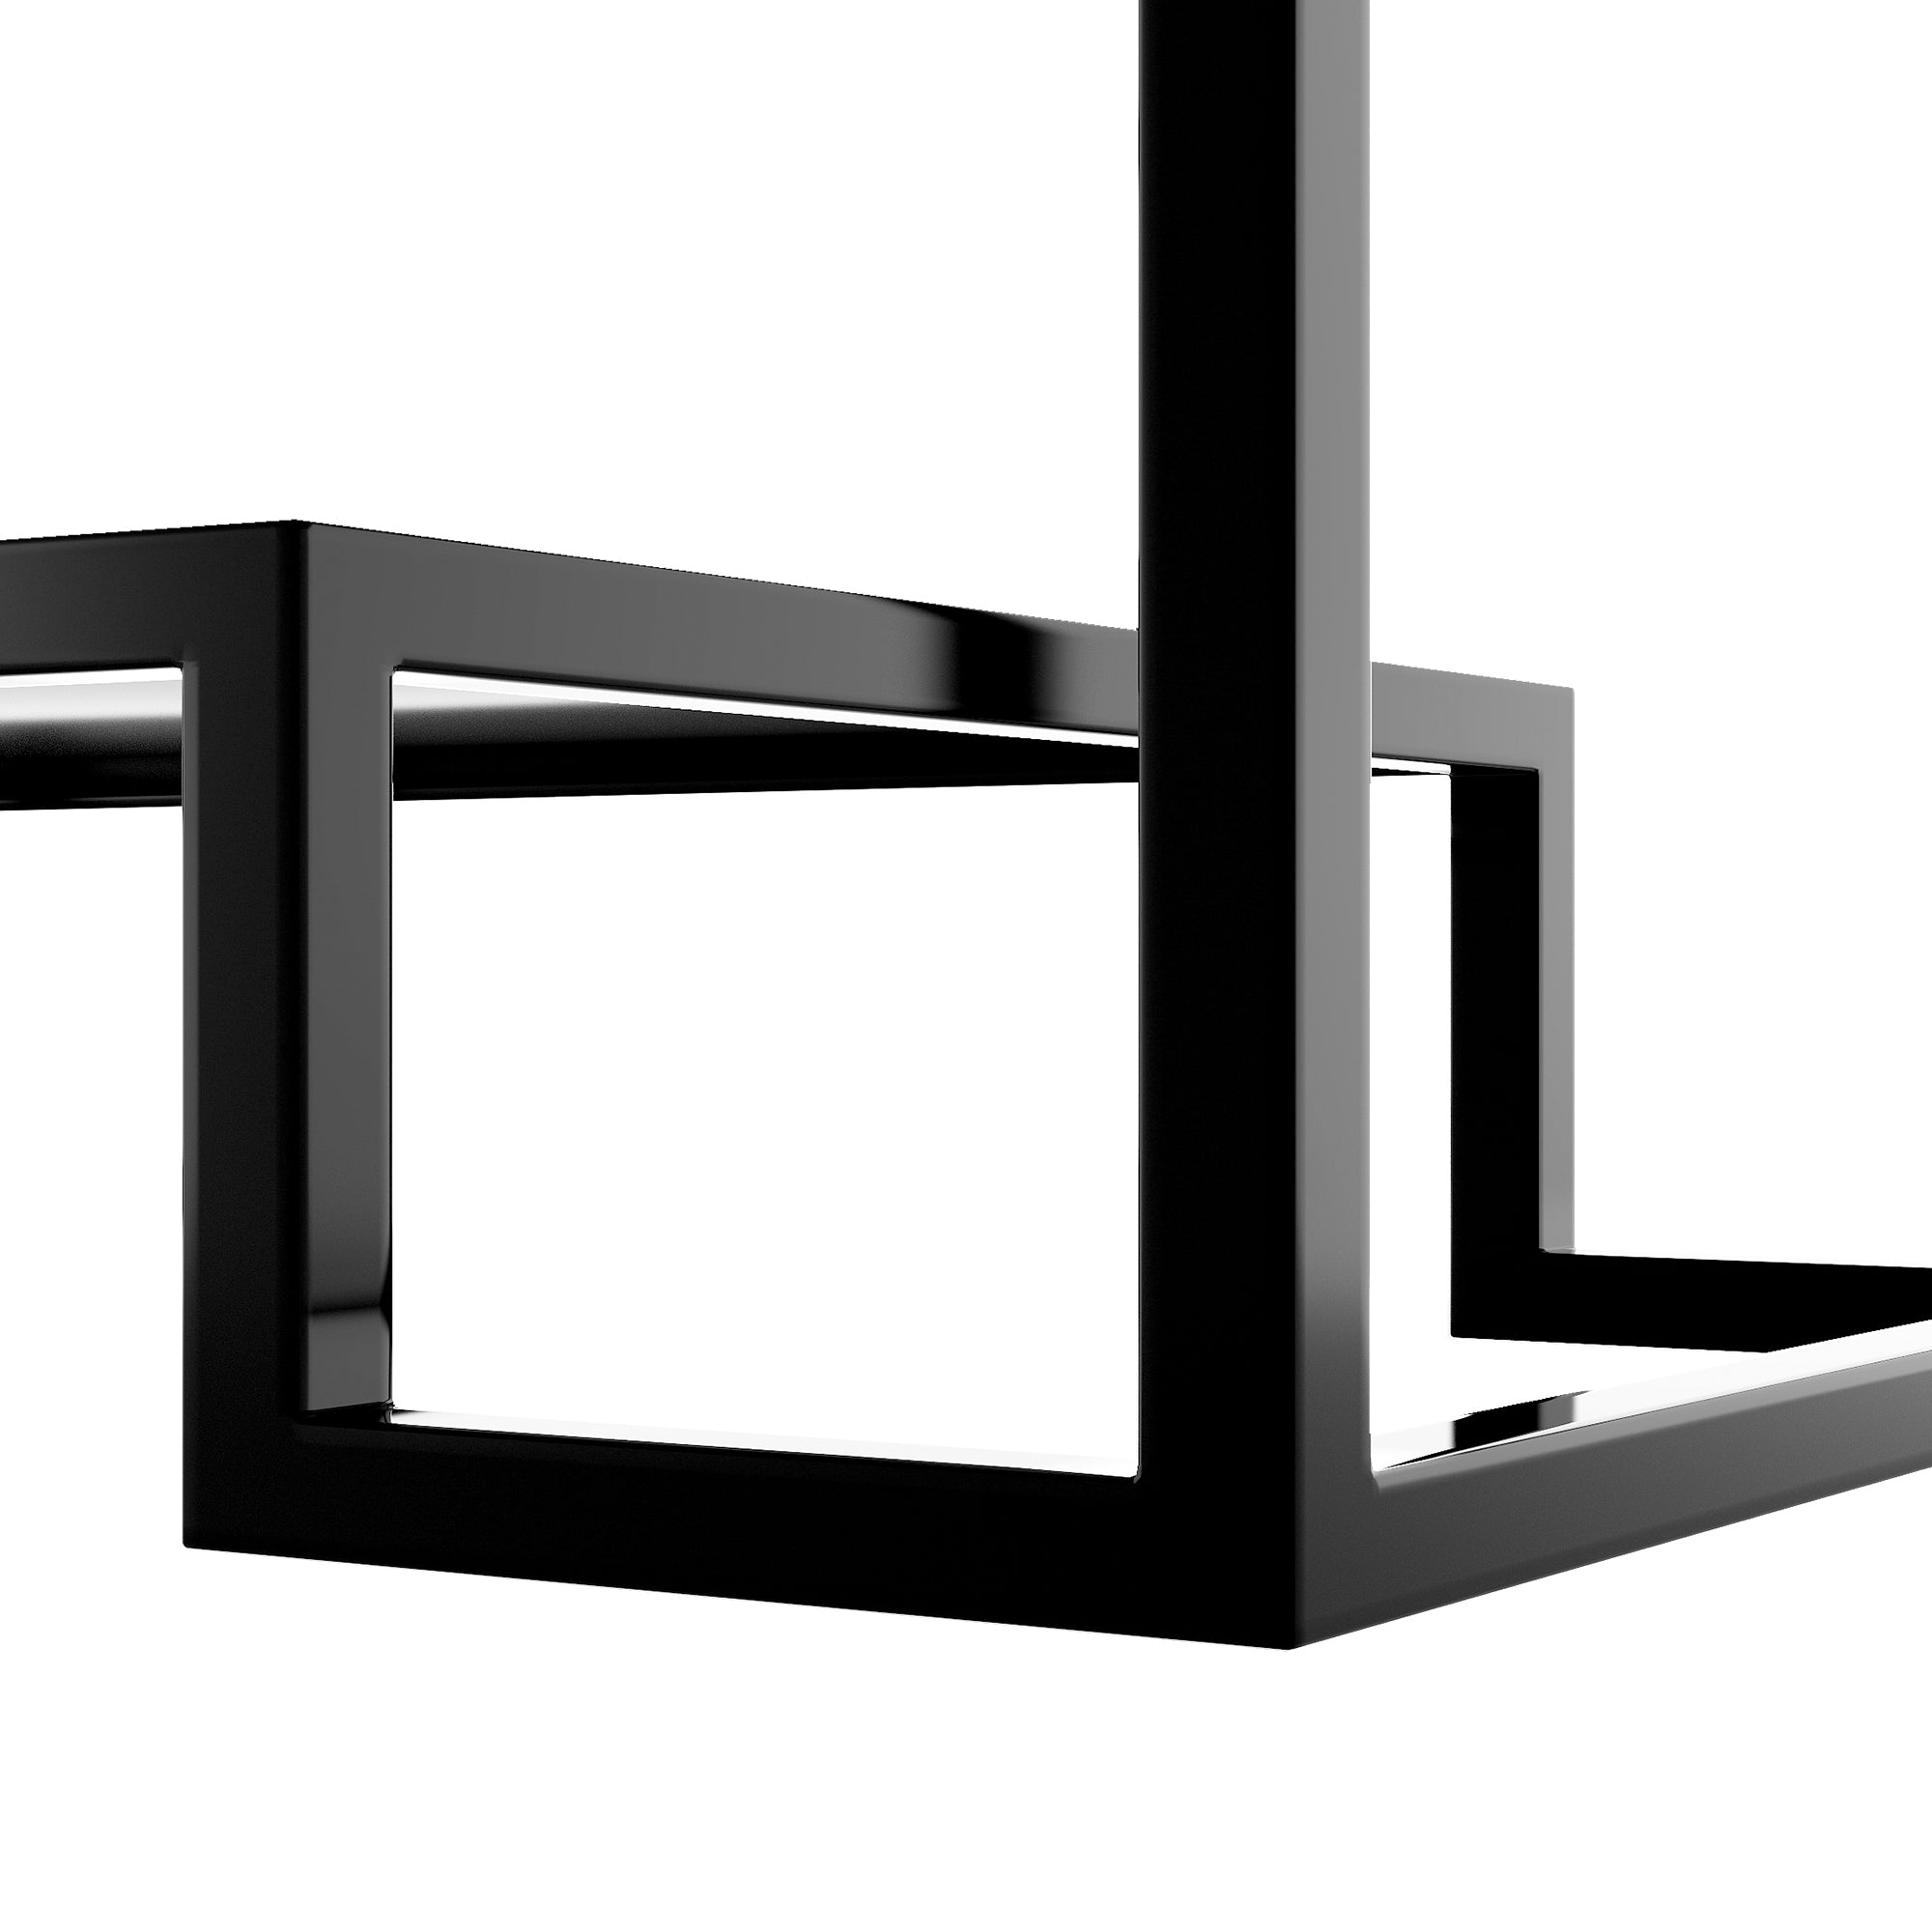 ON-TREND Modern Minimalist Design Living Room Coffee Table (Black)